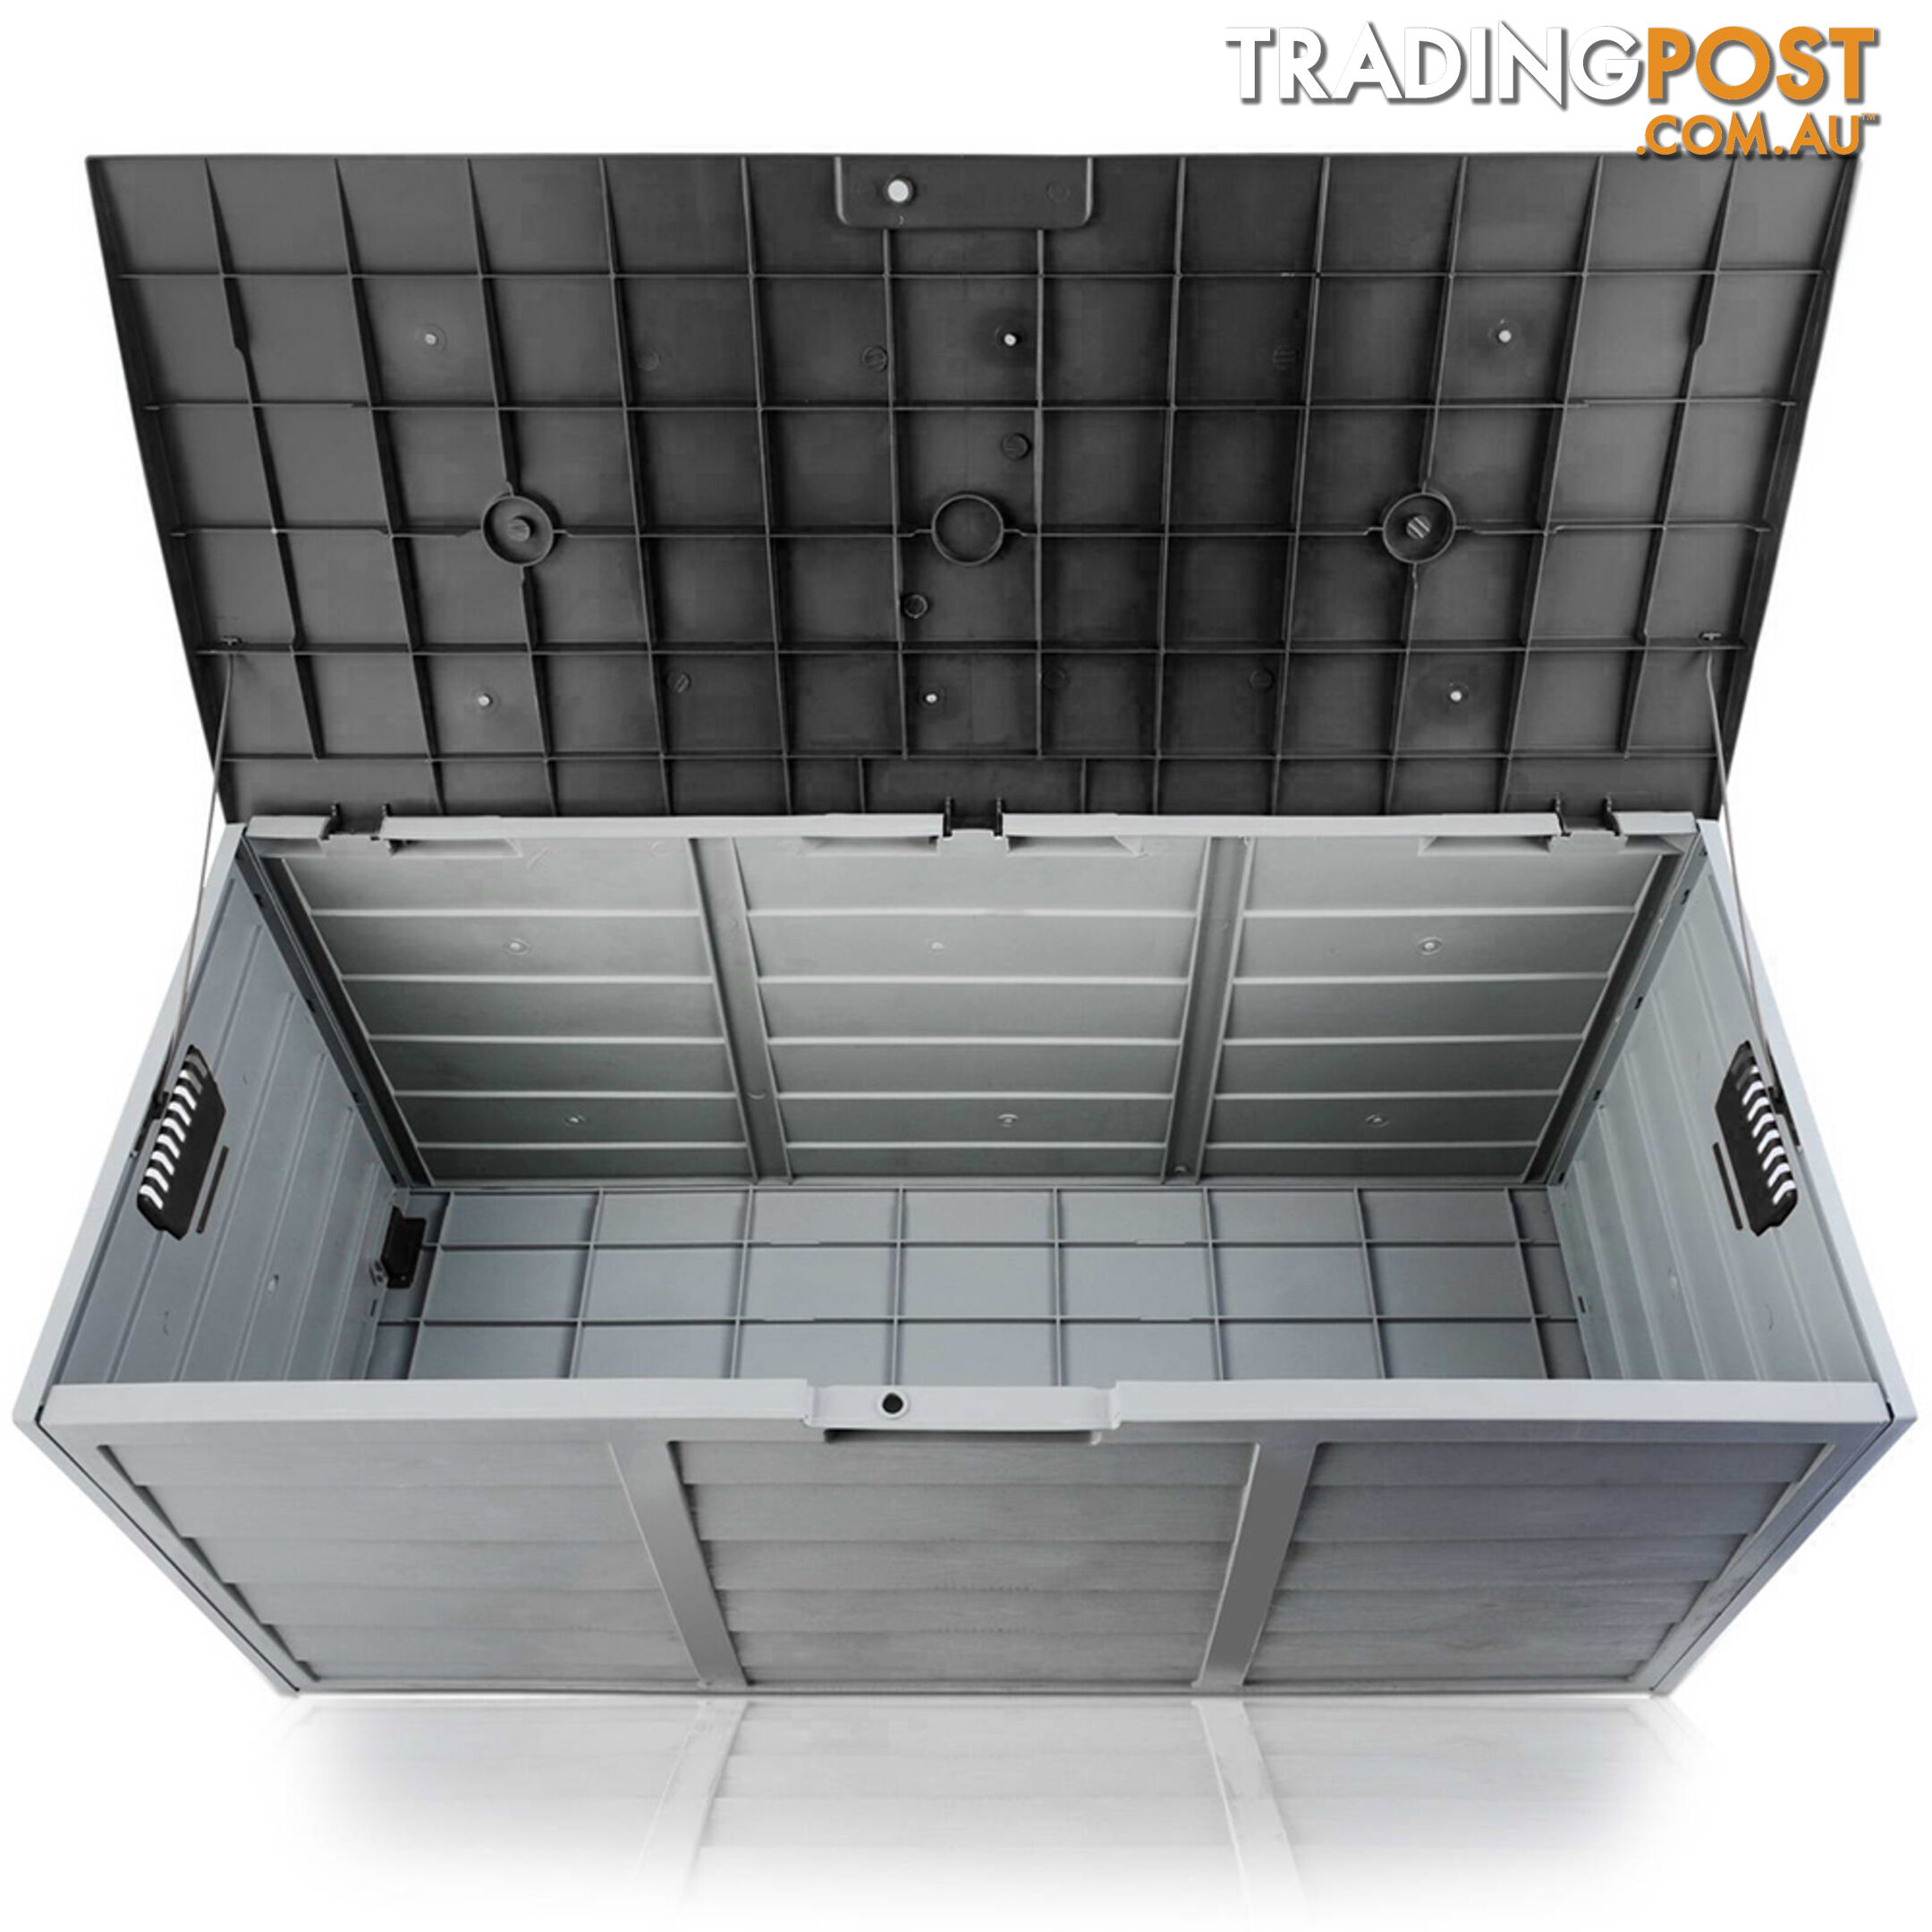 Outdoor Storage Box - 290L